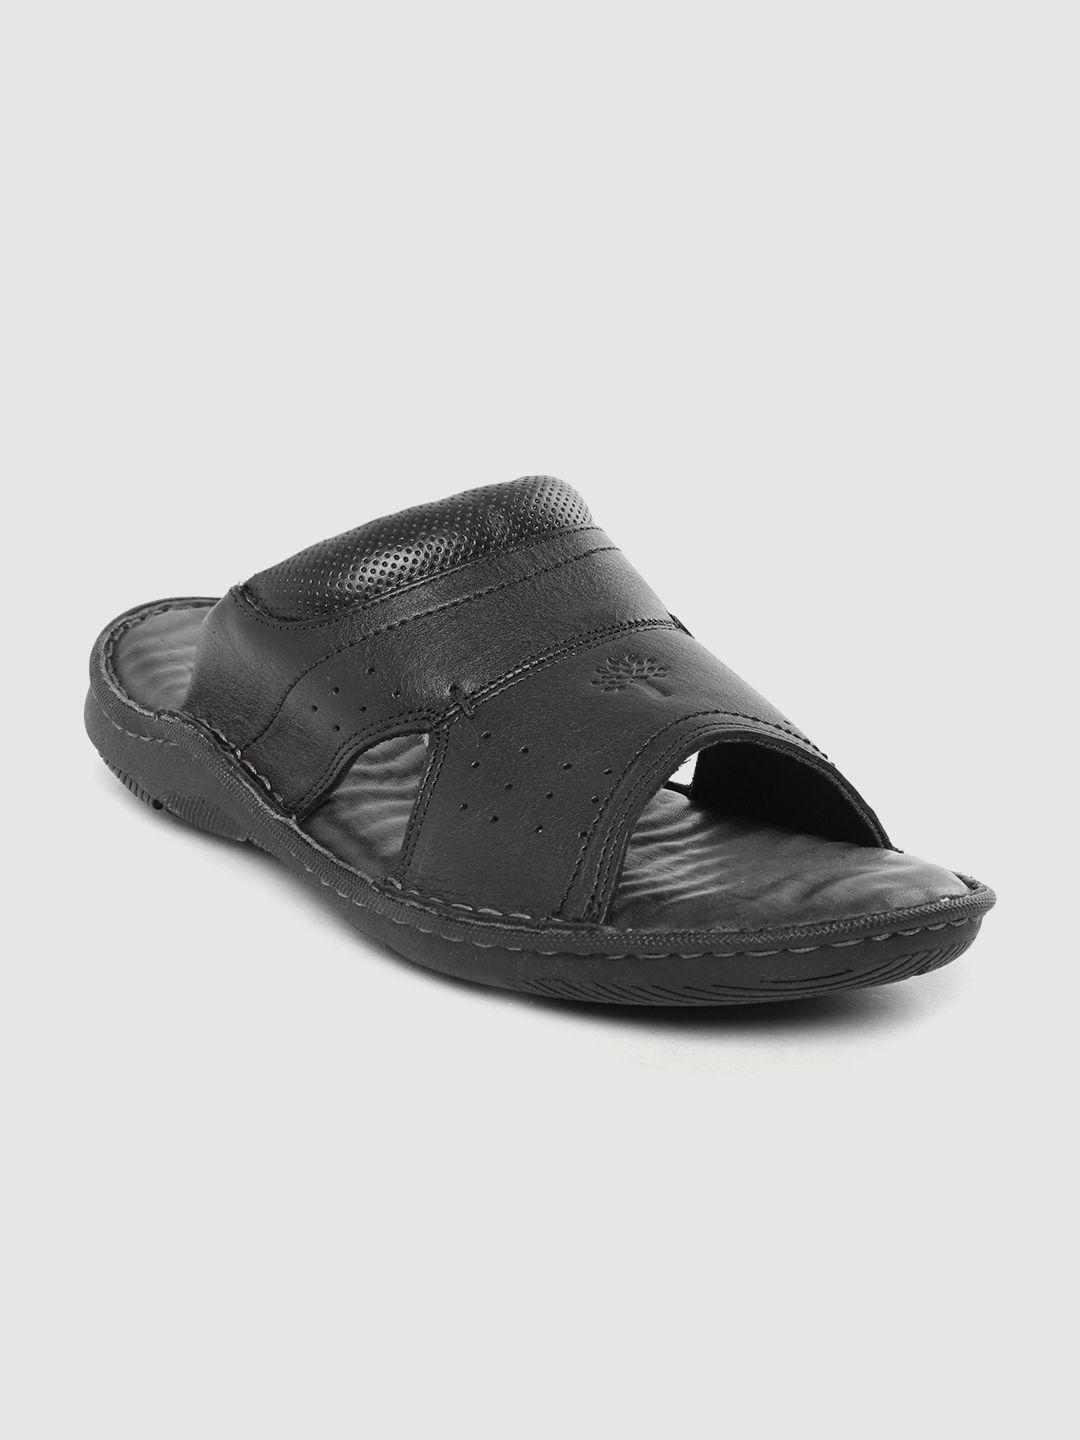 woodland-men-black-solid-leather-comfort-sandals